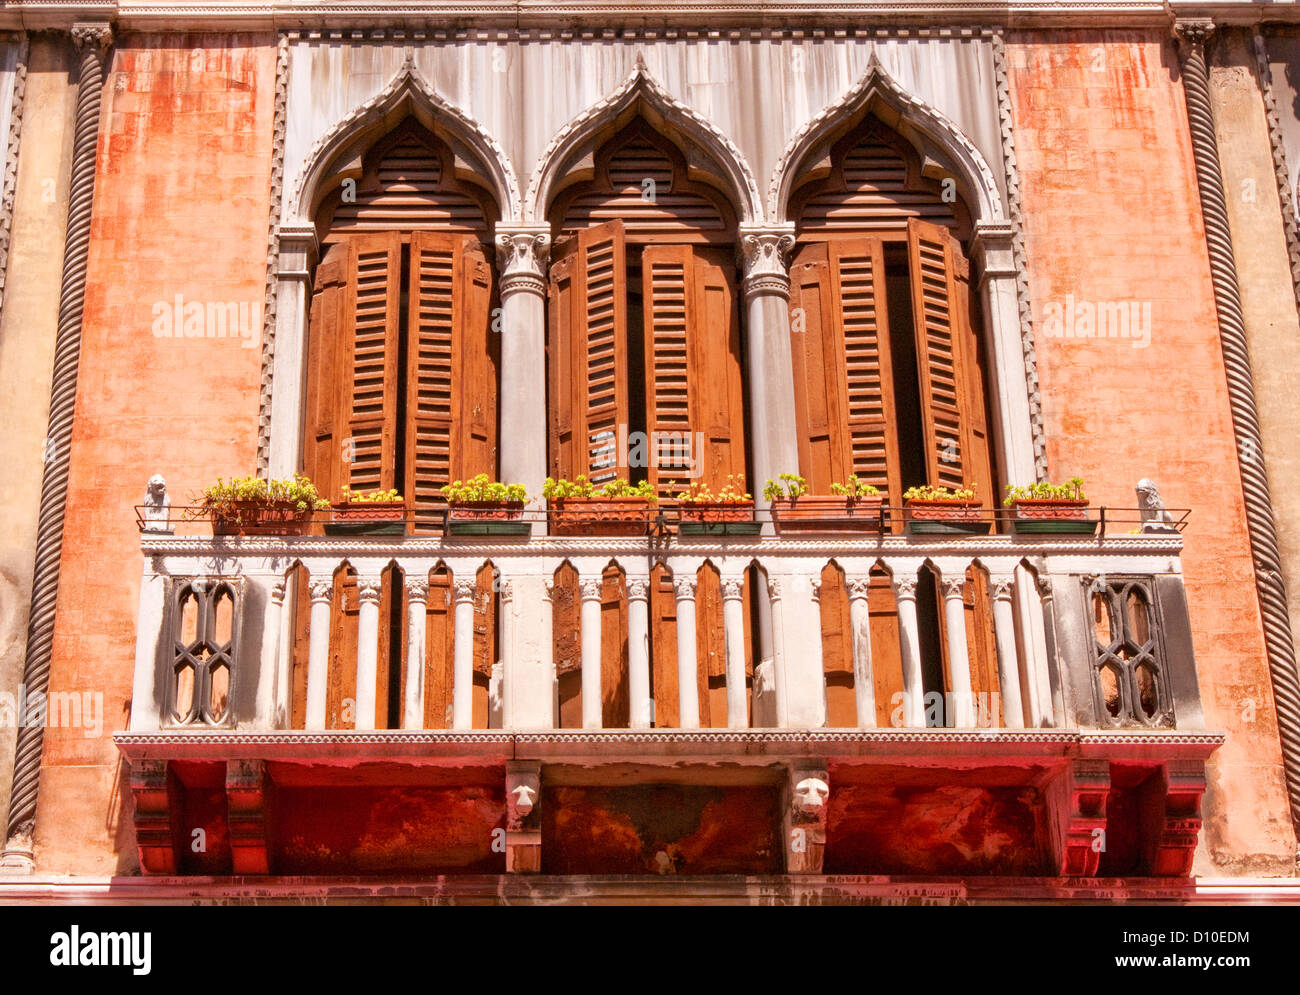 Fenêtres et balcon de l'immeuble, Venise, Italie Banque D'Images